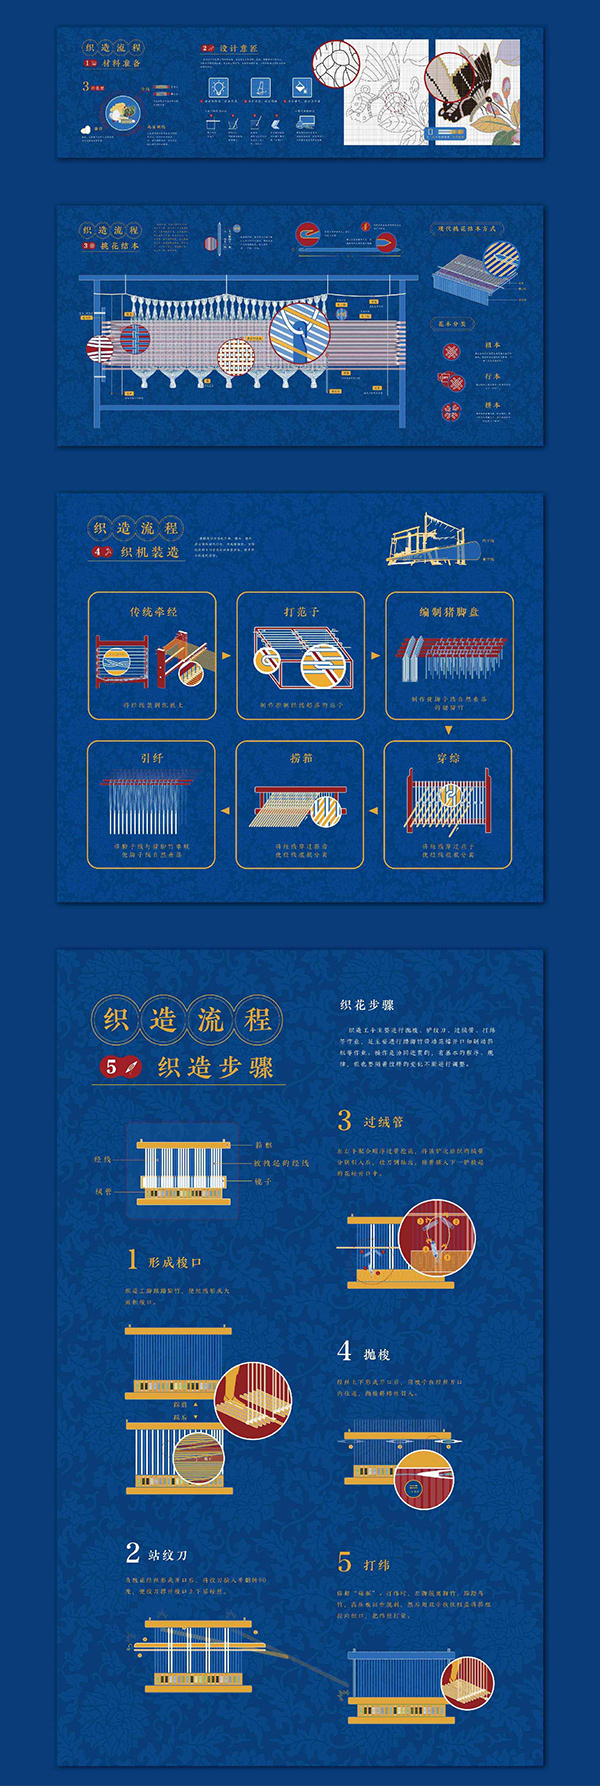 南京云锦信息可视化设计-Infographic Design of Nanjing Brocade